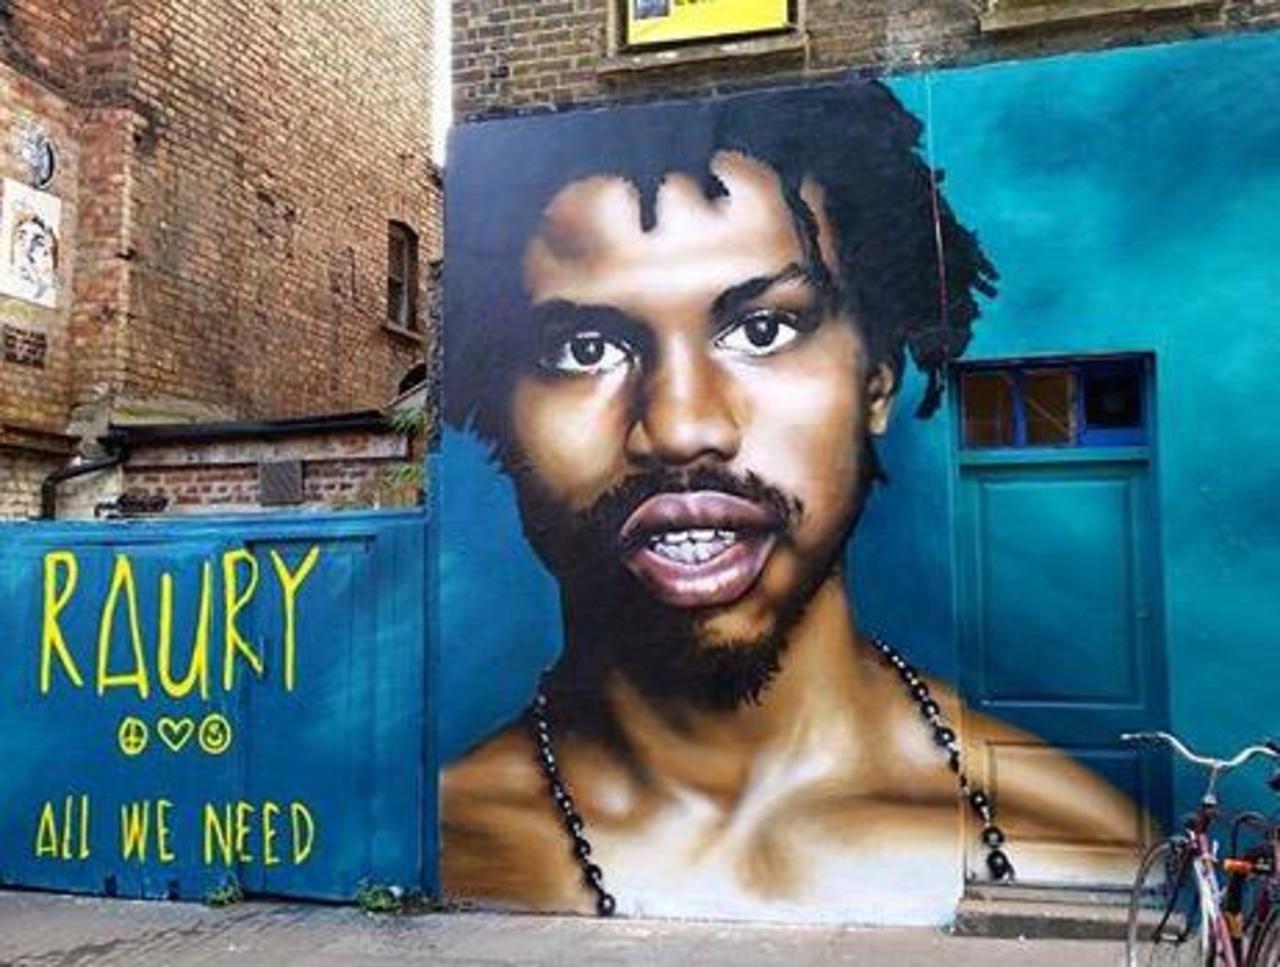 New Street Art of Raury by Olliver Switch in Brick Lane 

#art #graffiti #mural #streetart http://t.co/ZRDaJ7JbDt